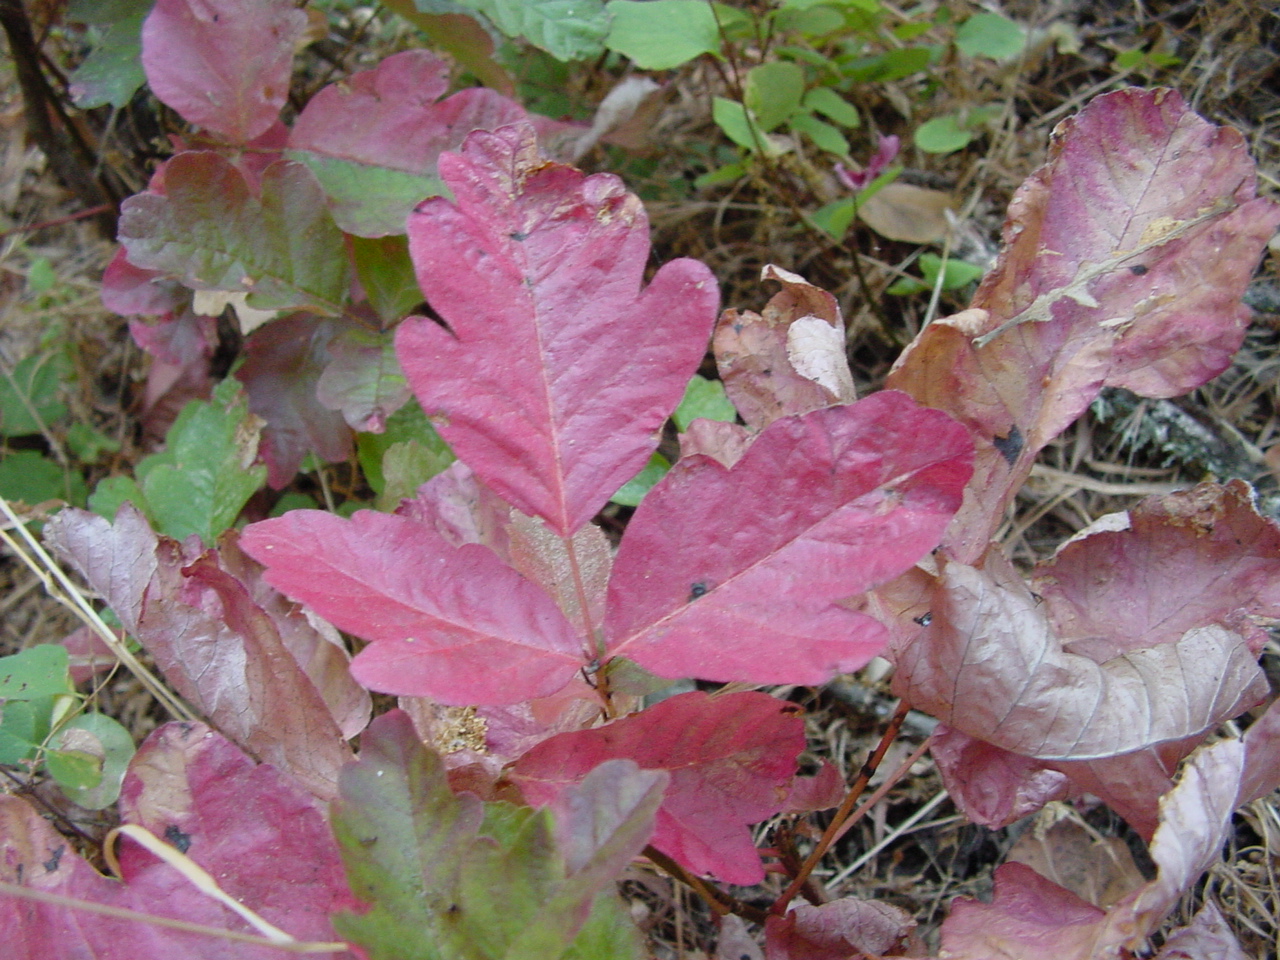 Poison oak (Toxicodendron diversilobum)